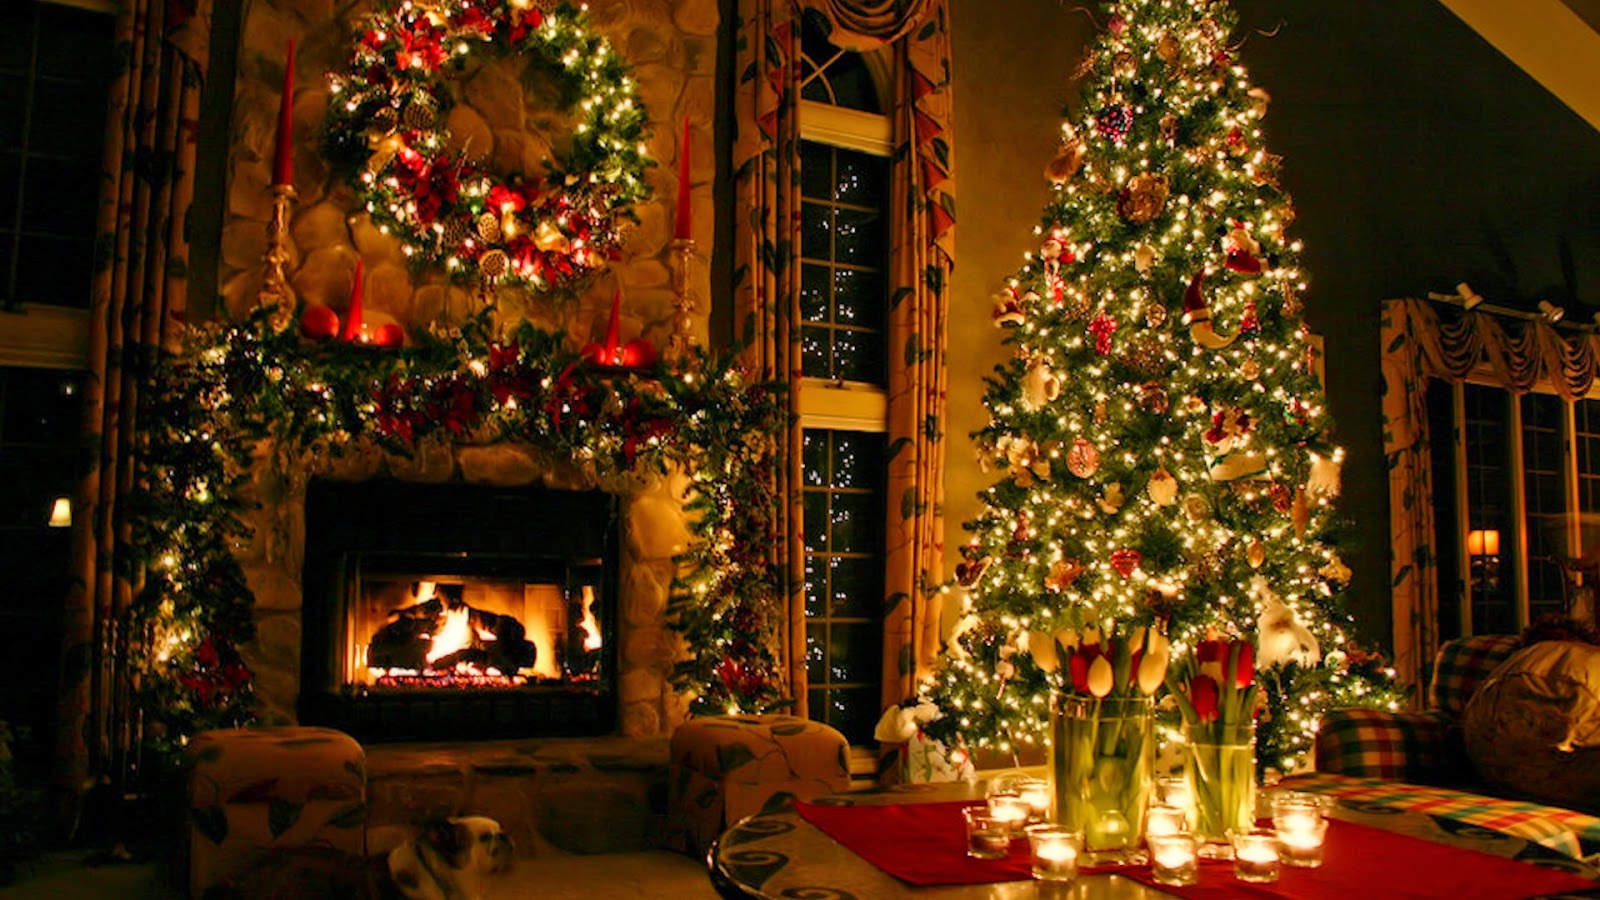 クリスマス壁紙無料ライブ,クリスマス,クリスマスツリー,クリスマスの飾り,クリスマスオーナメント,クリスマス・イブ